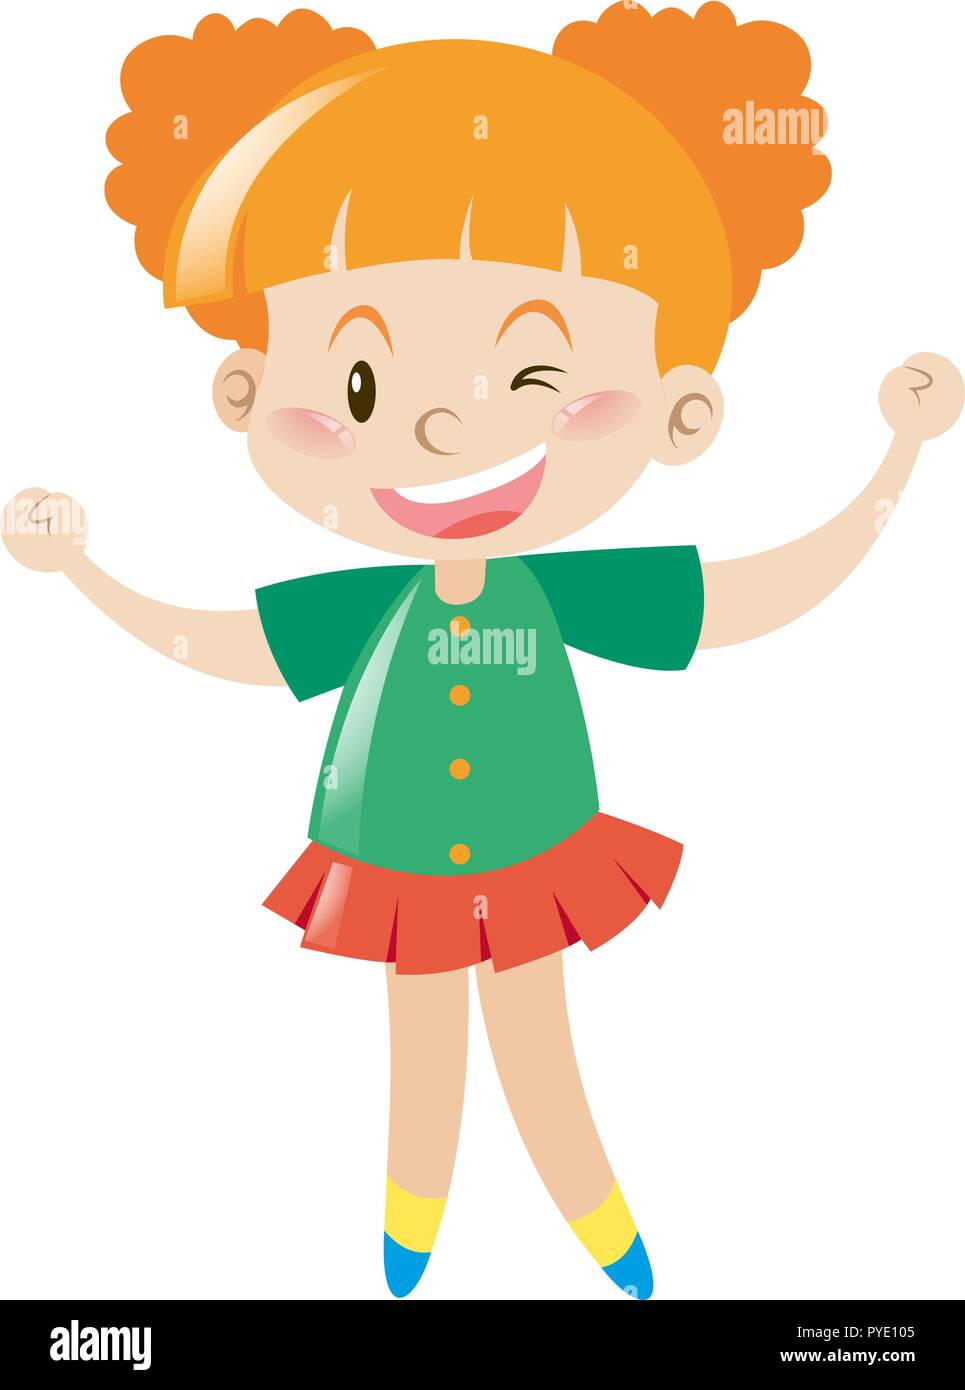 Little girl in green shirt smiling illustration Stock Vector Image & Art -  Alamy